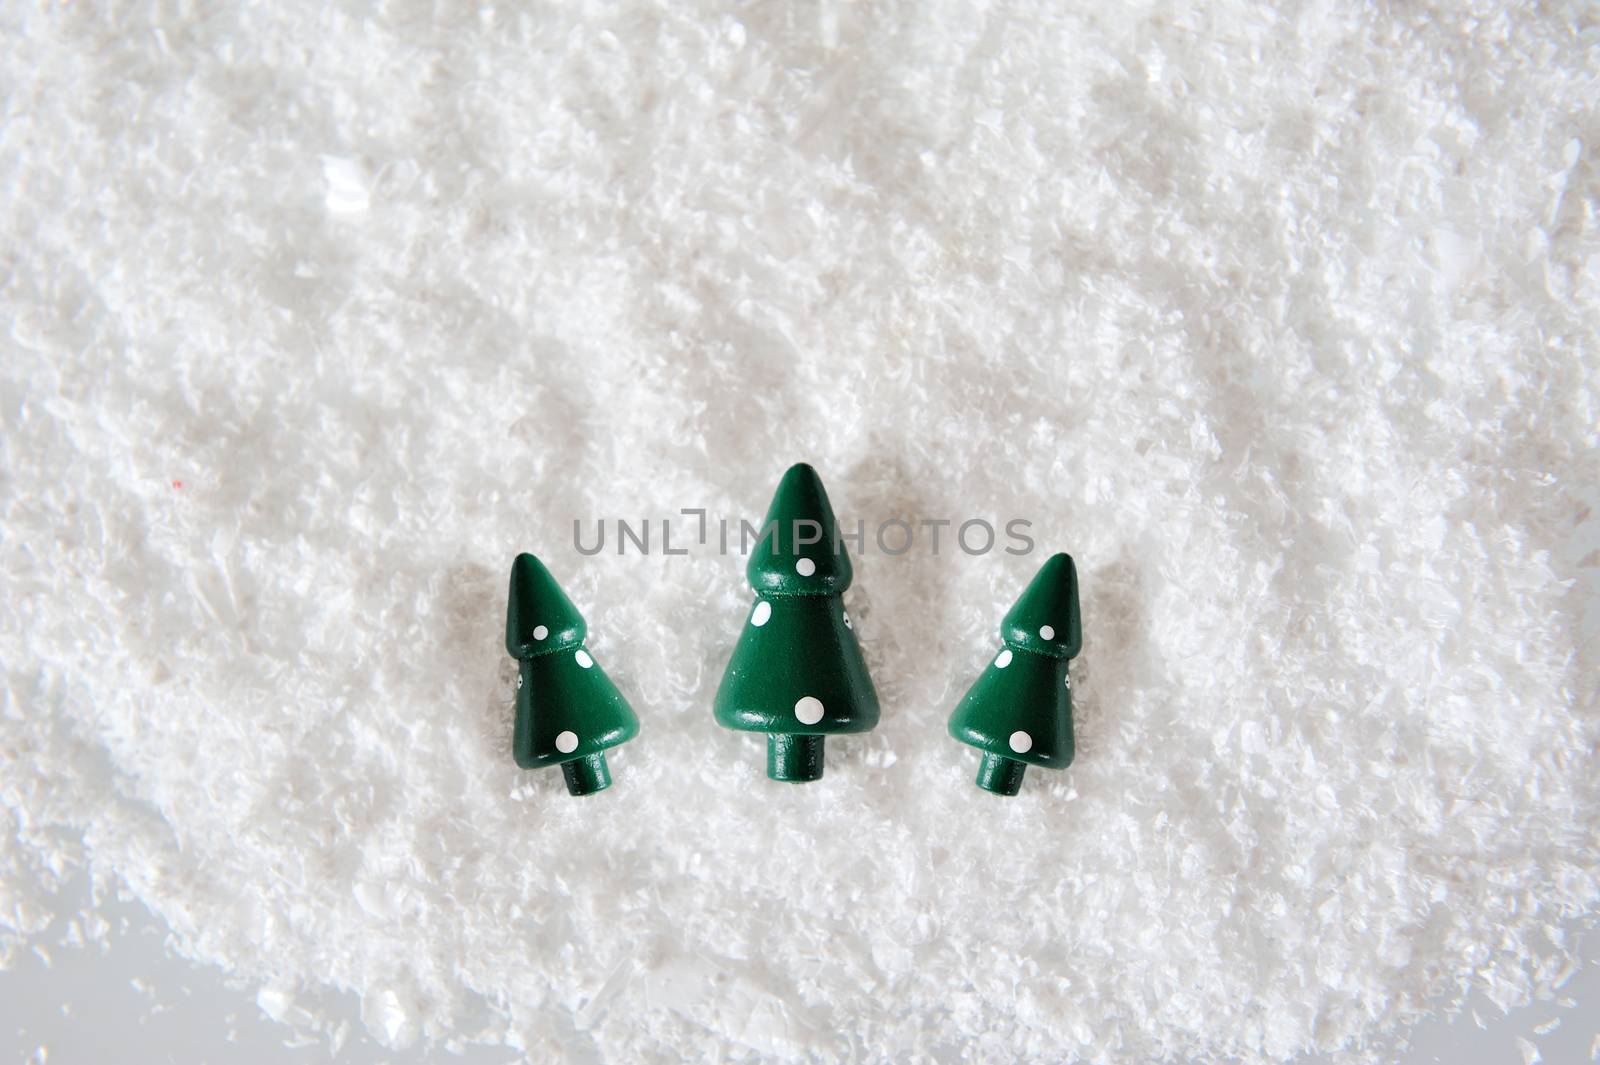 Three Miniature Christmas Trees on snow